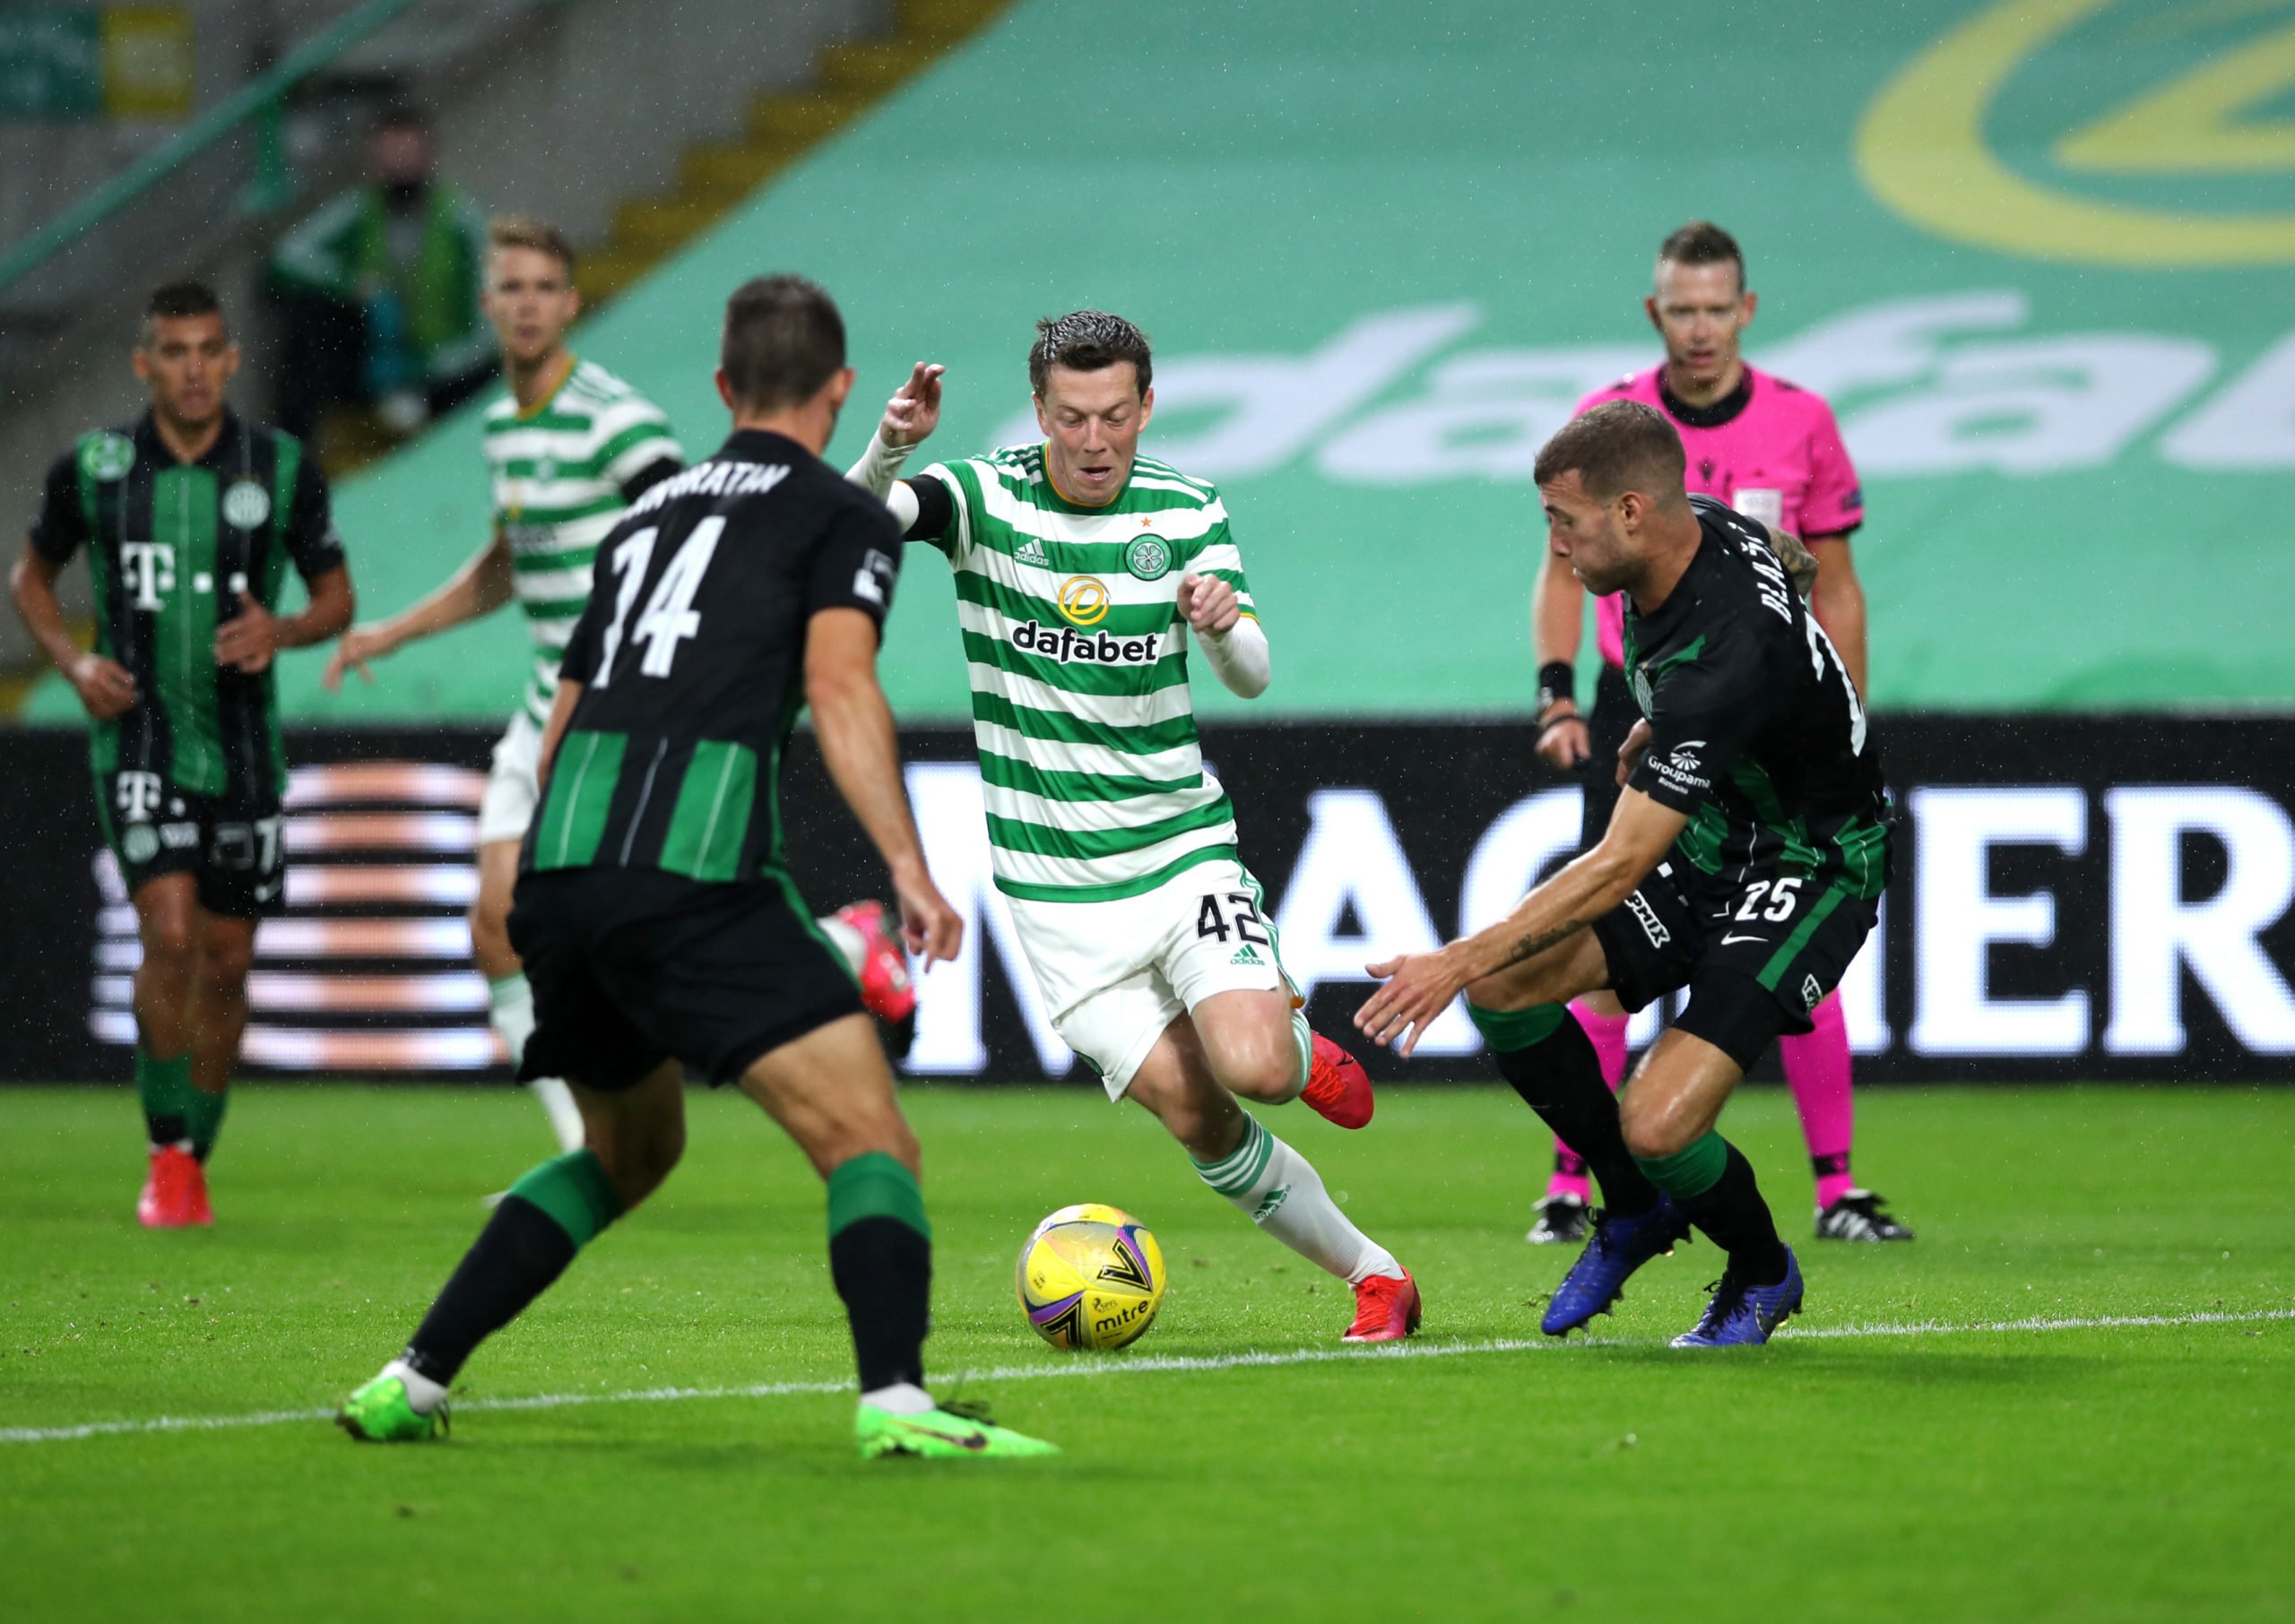 Callum McGregor in action for Celtic